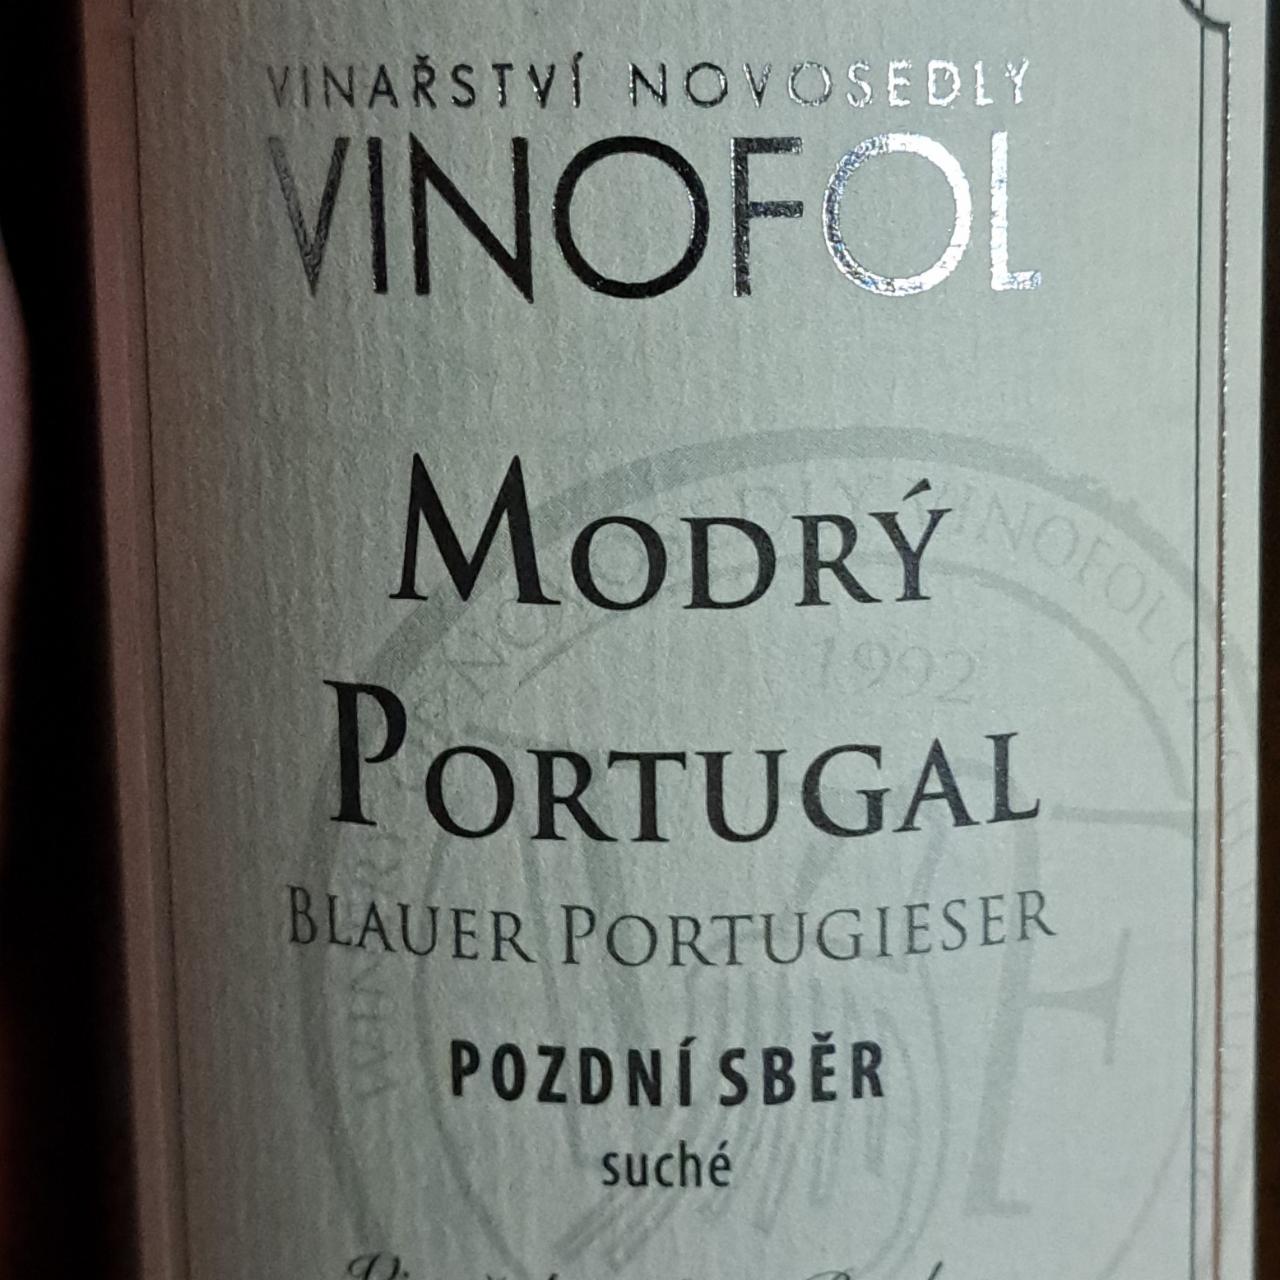 Fotografie - Modrý Portugal pozdní sběr Vinofol